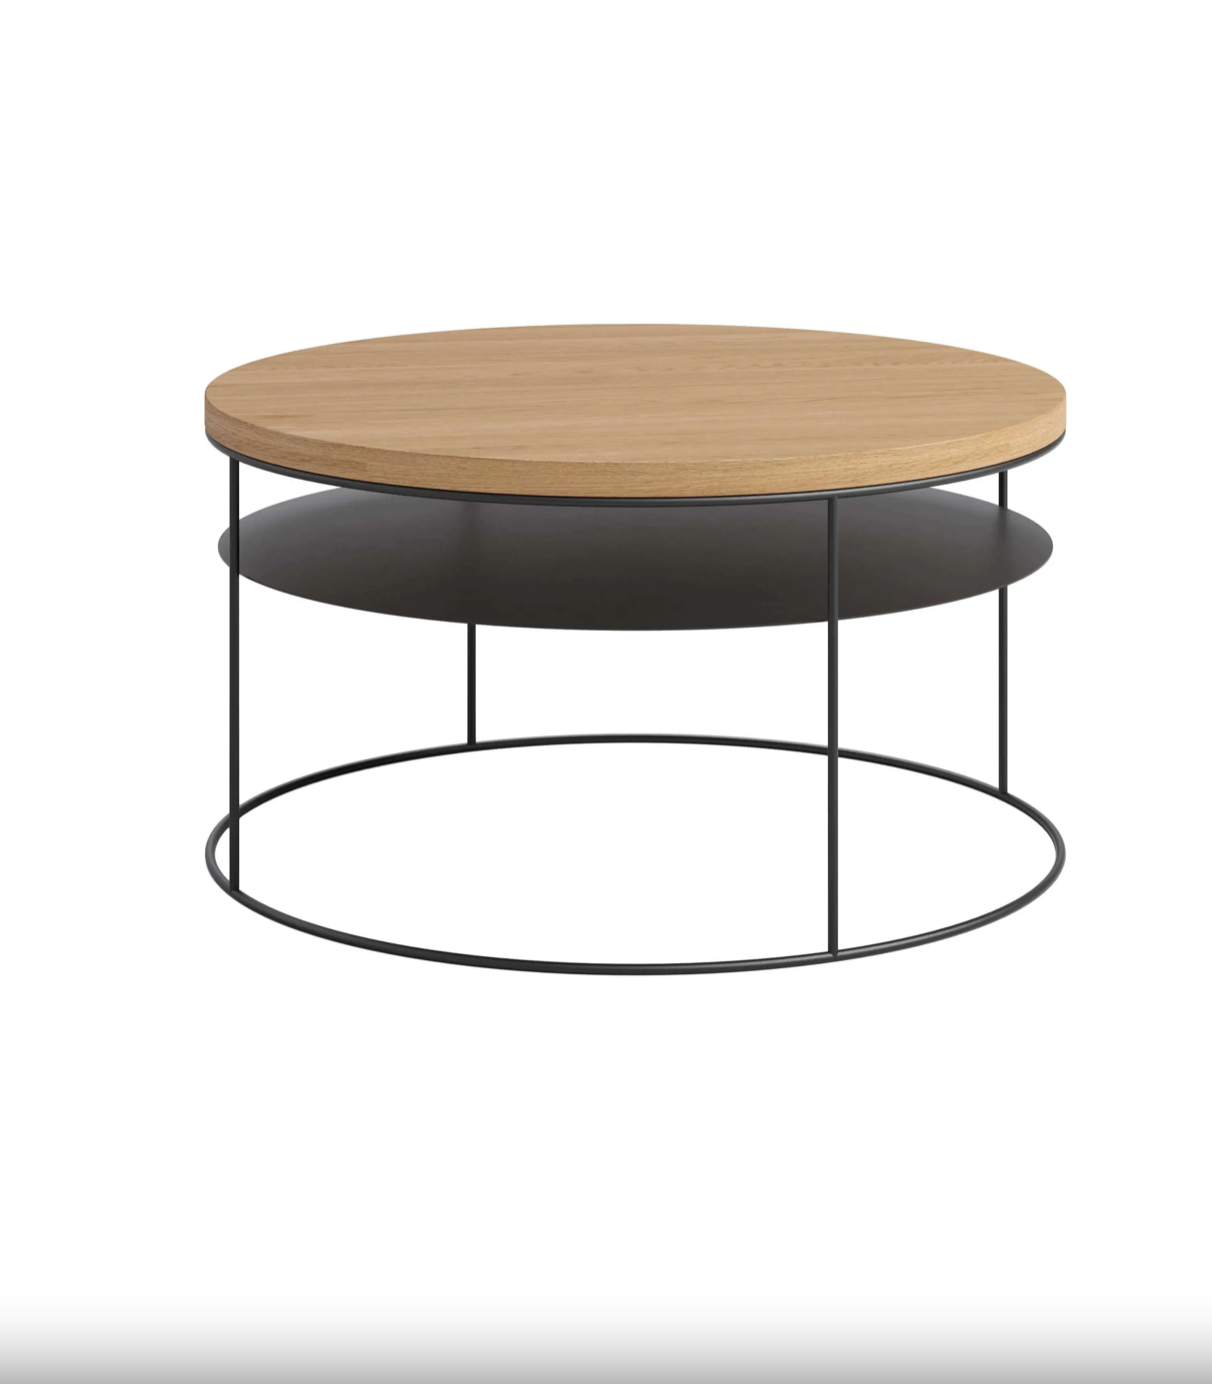 Nowoczesny, okrągły stolik kawowy z półką i dębowym blatem o średnicy 80 cm.